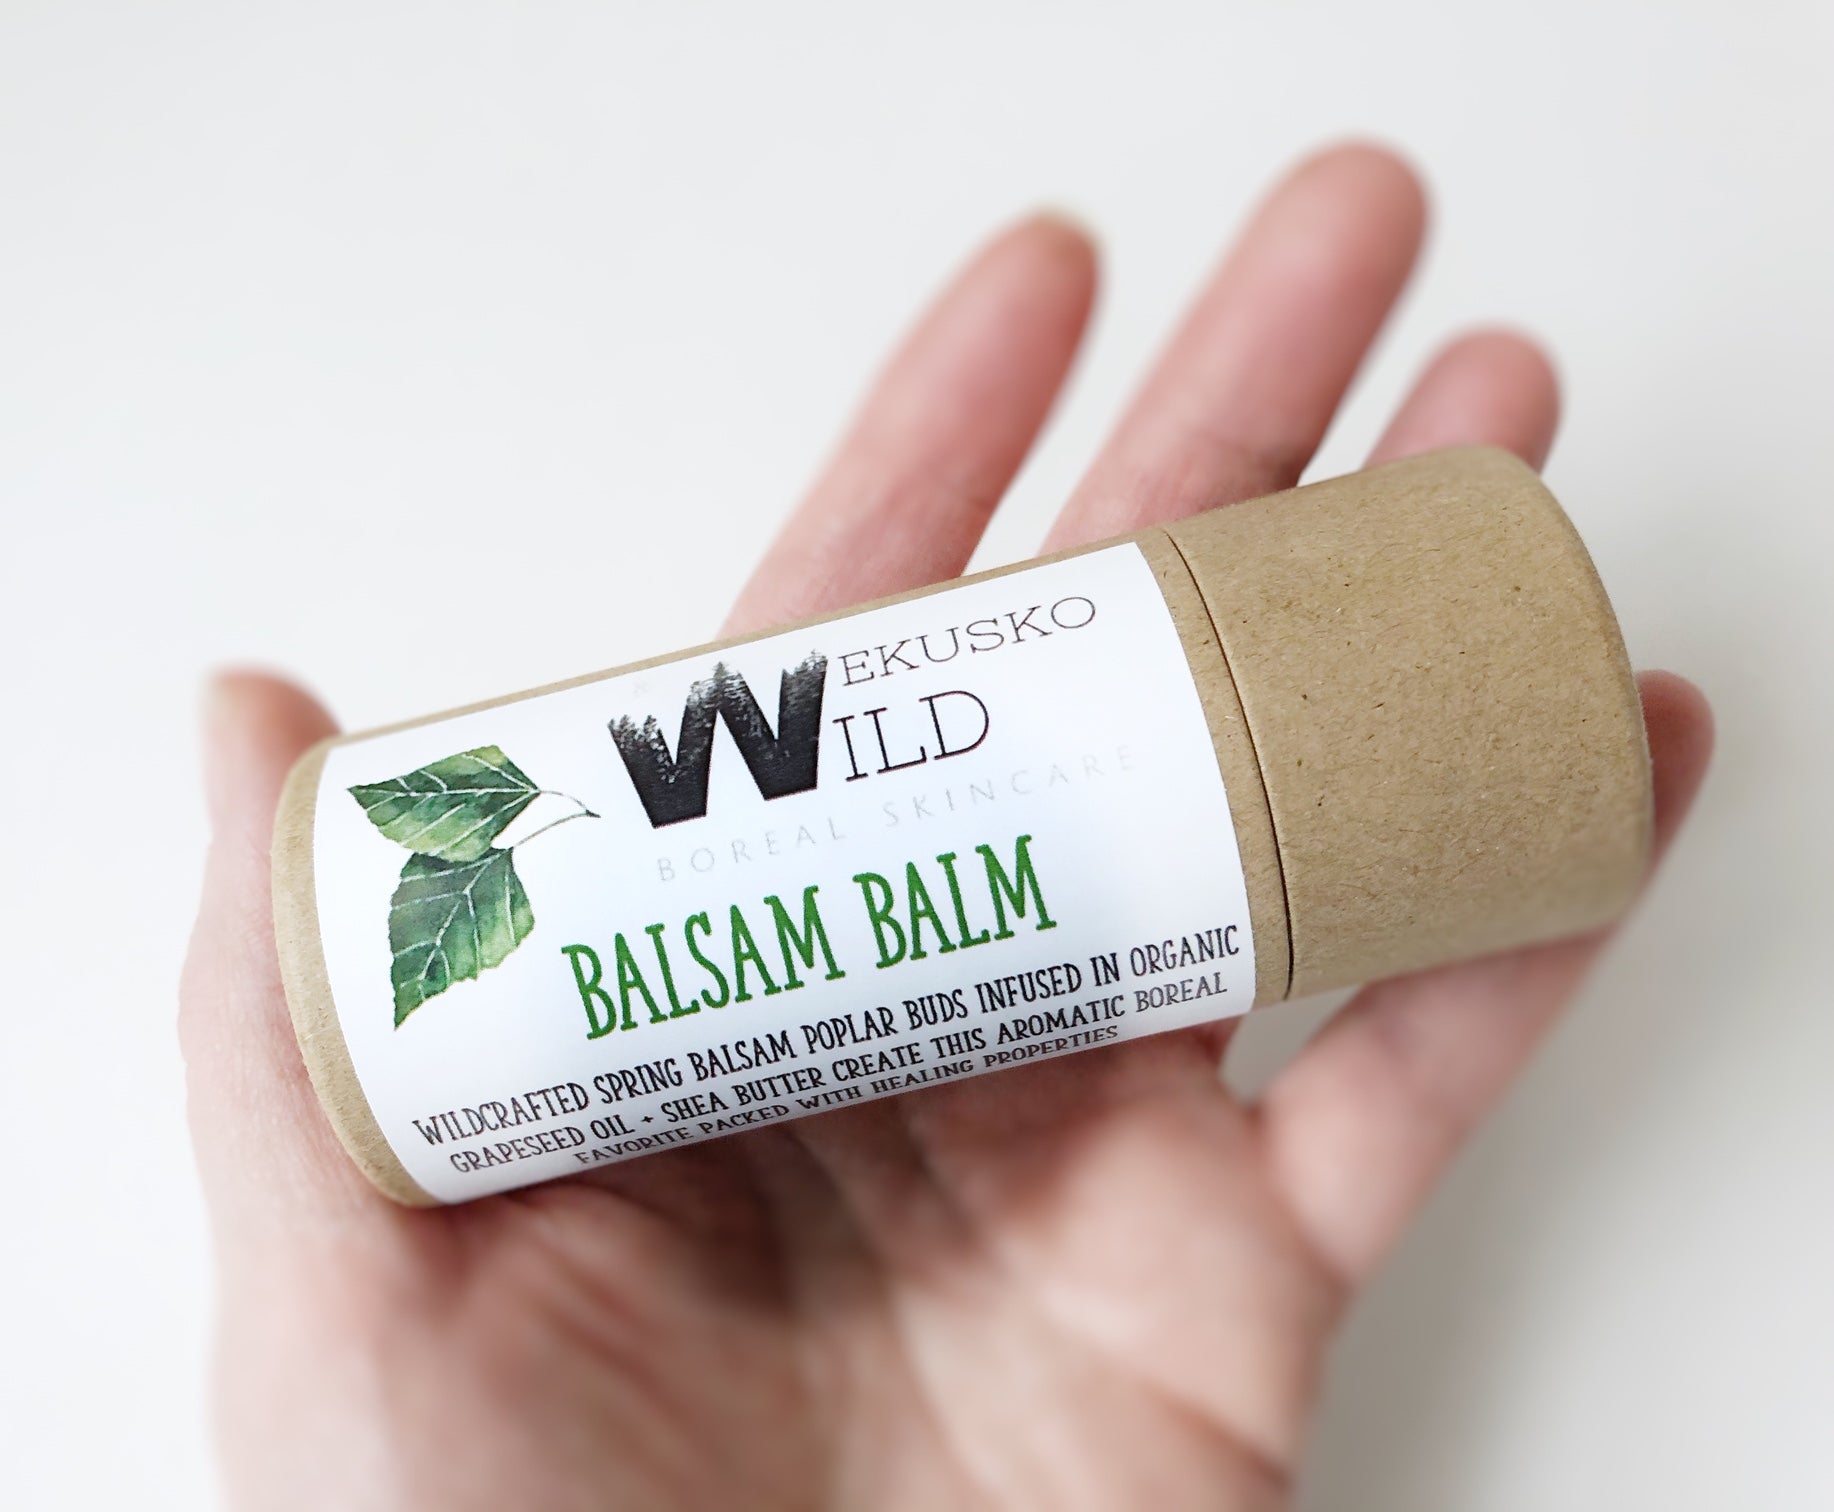 balsam balm - WEKUSKO WILD Boreal Skincare